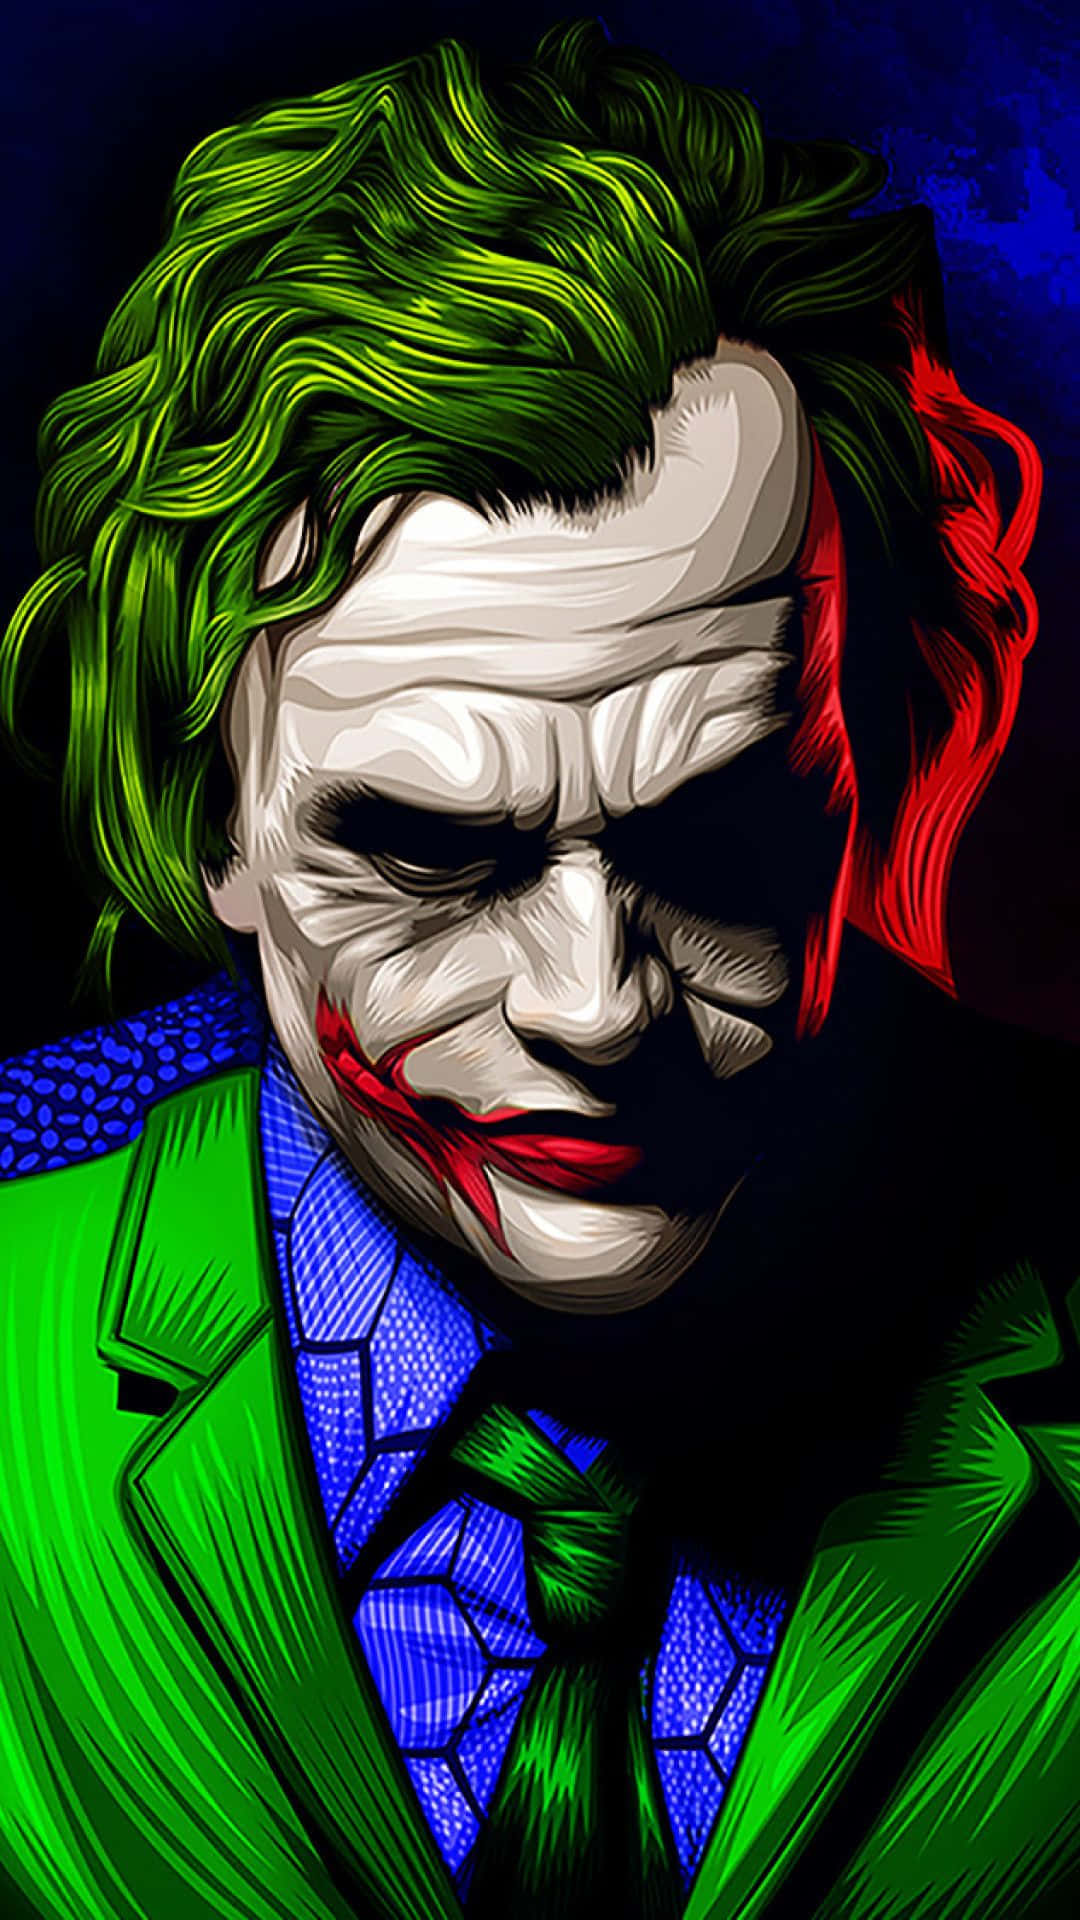 Den Ikoniska Joker Karaktären Gör En Bra Bakgrundsbild För Fans Av Batman-franchisen.